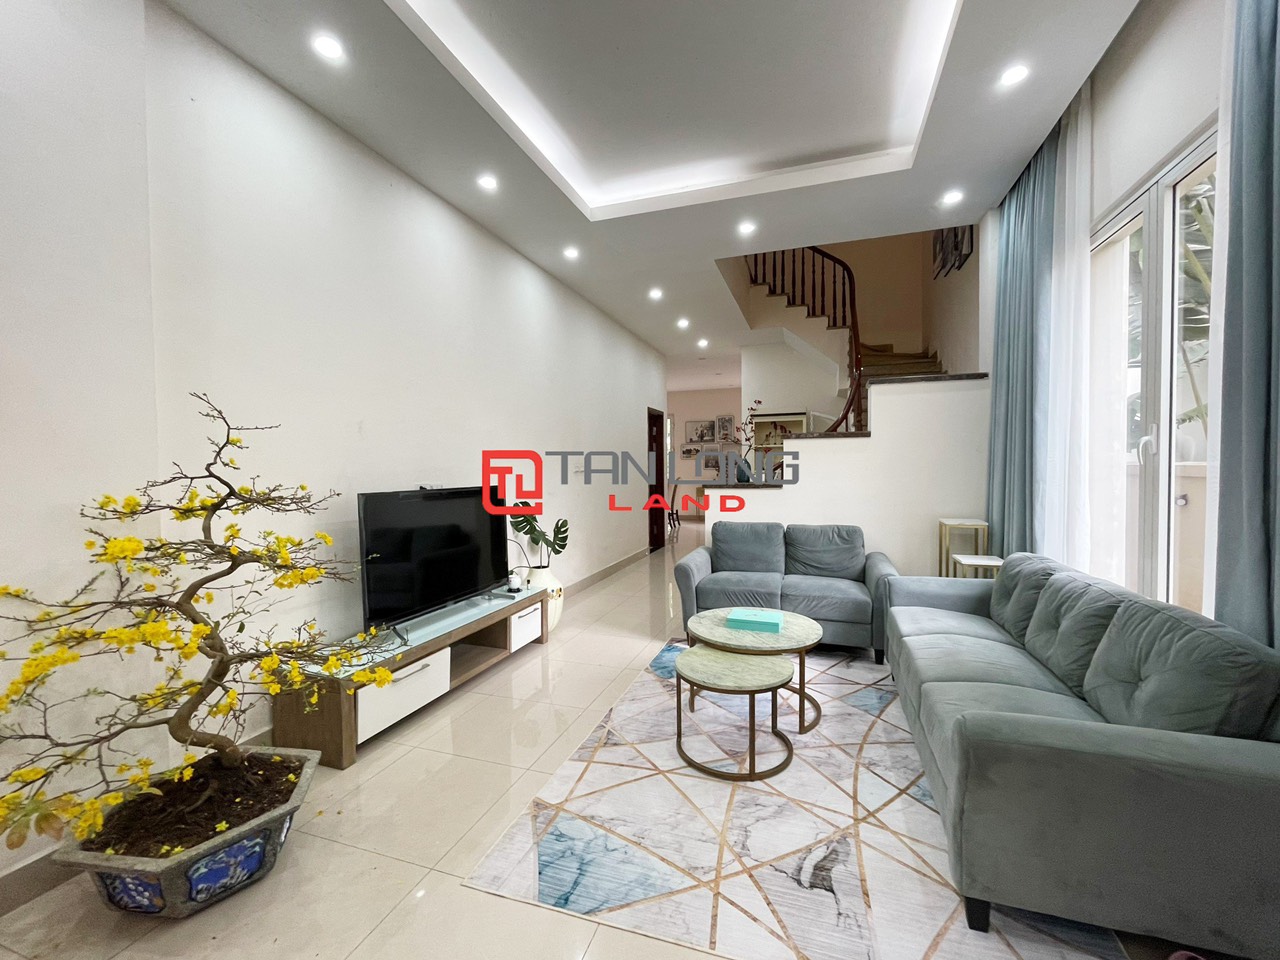 5 Bedrooms Duplex Villa for Rent with Reasonable Price in Vinhomes Riverside Long Bien